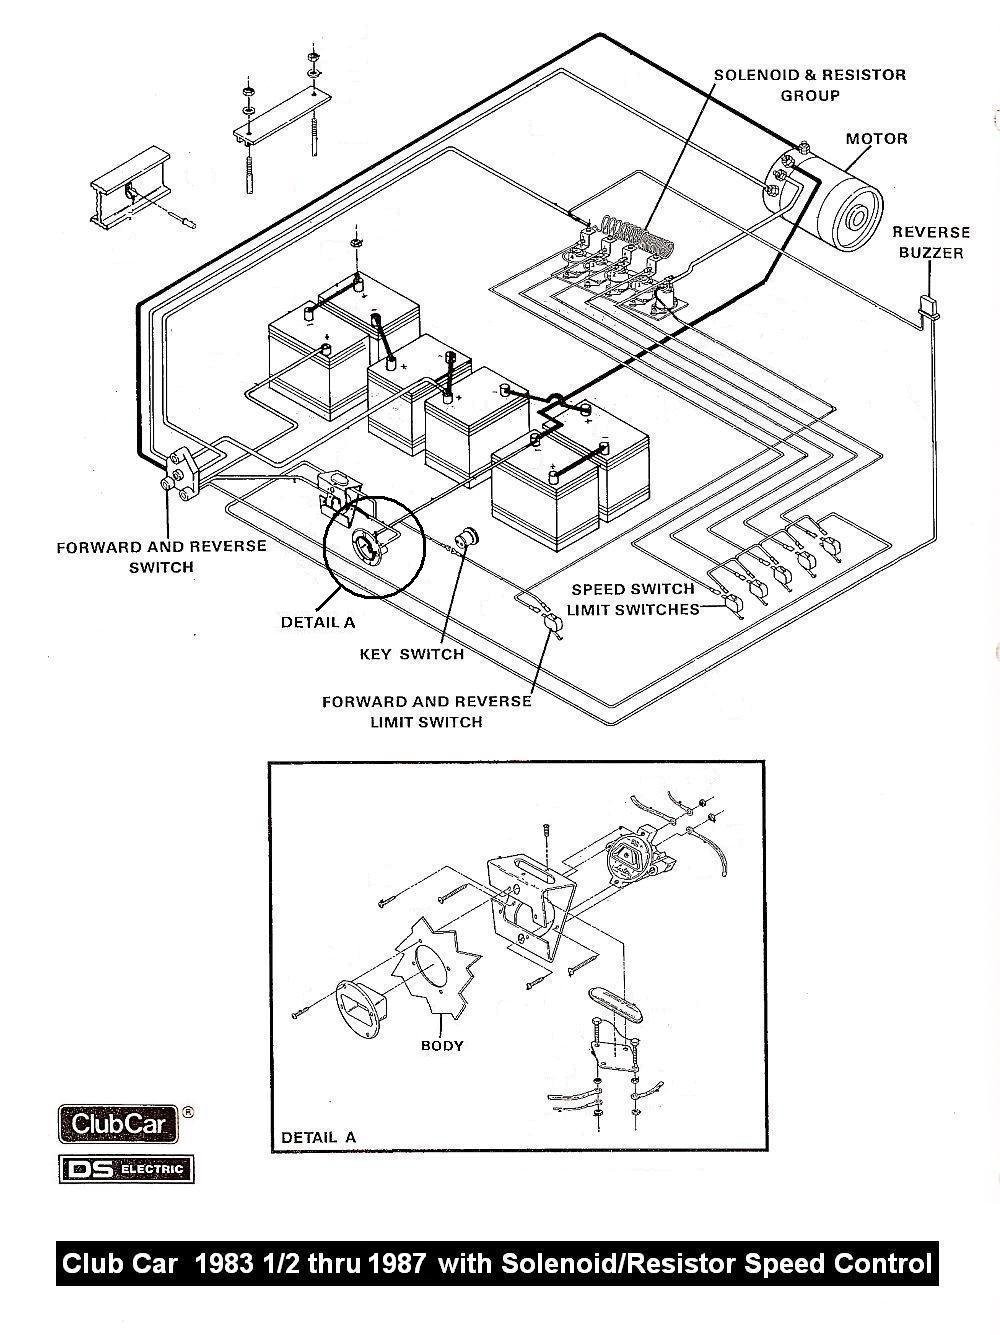 Battery Wiring Diagram For 36 Volt Club Car 1983 Automotive Wiring on club car golf